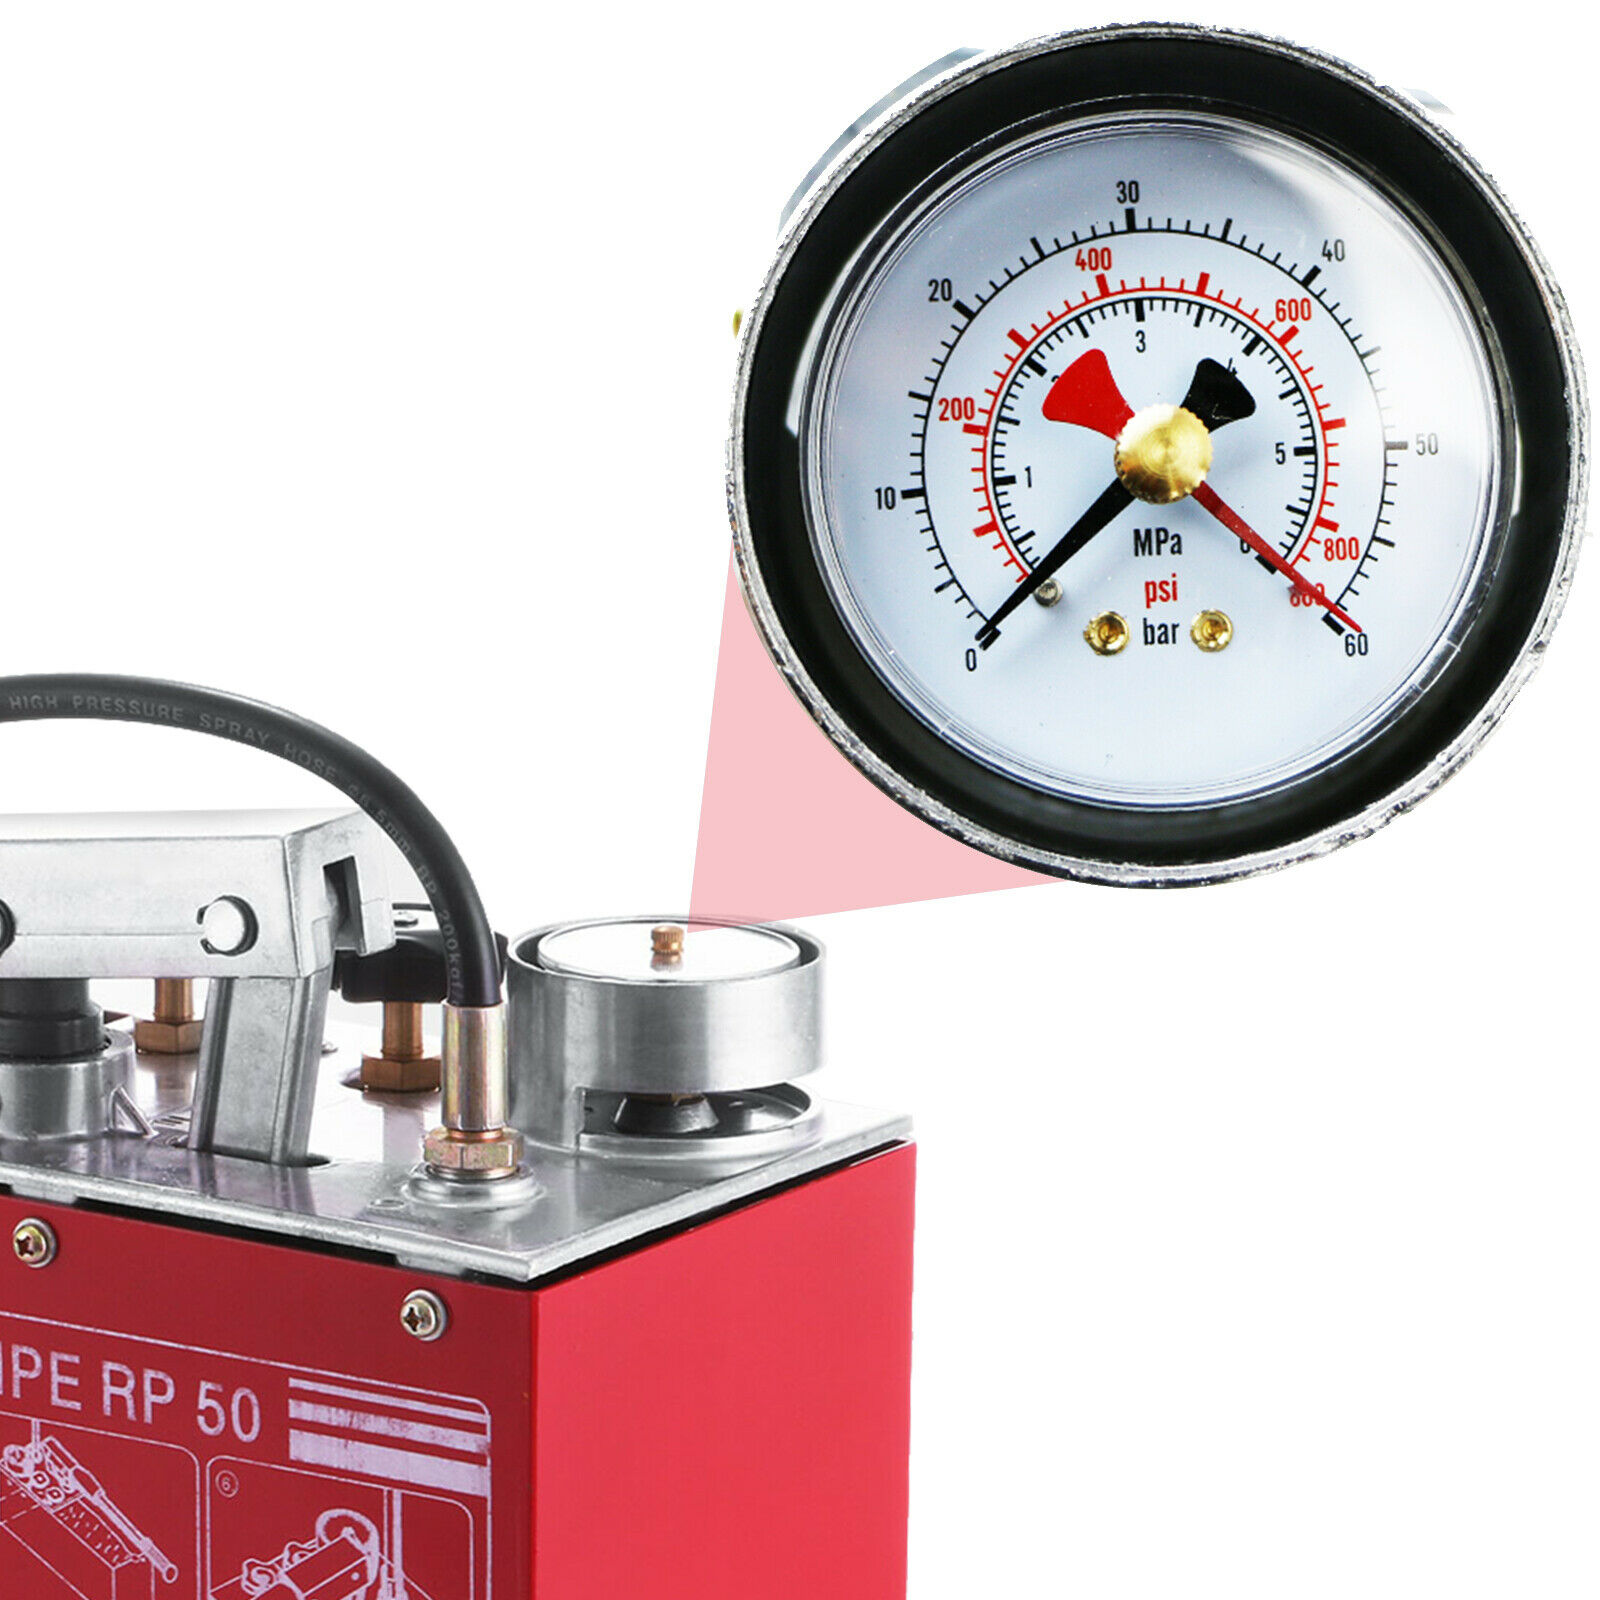 Hydraulic Manual Pressure Test Pump